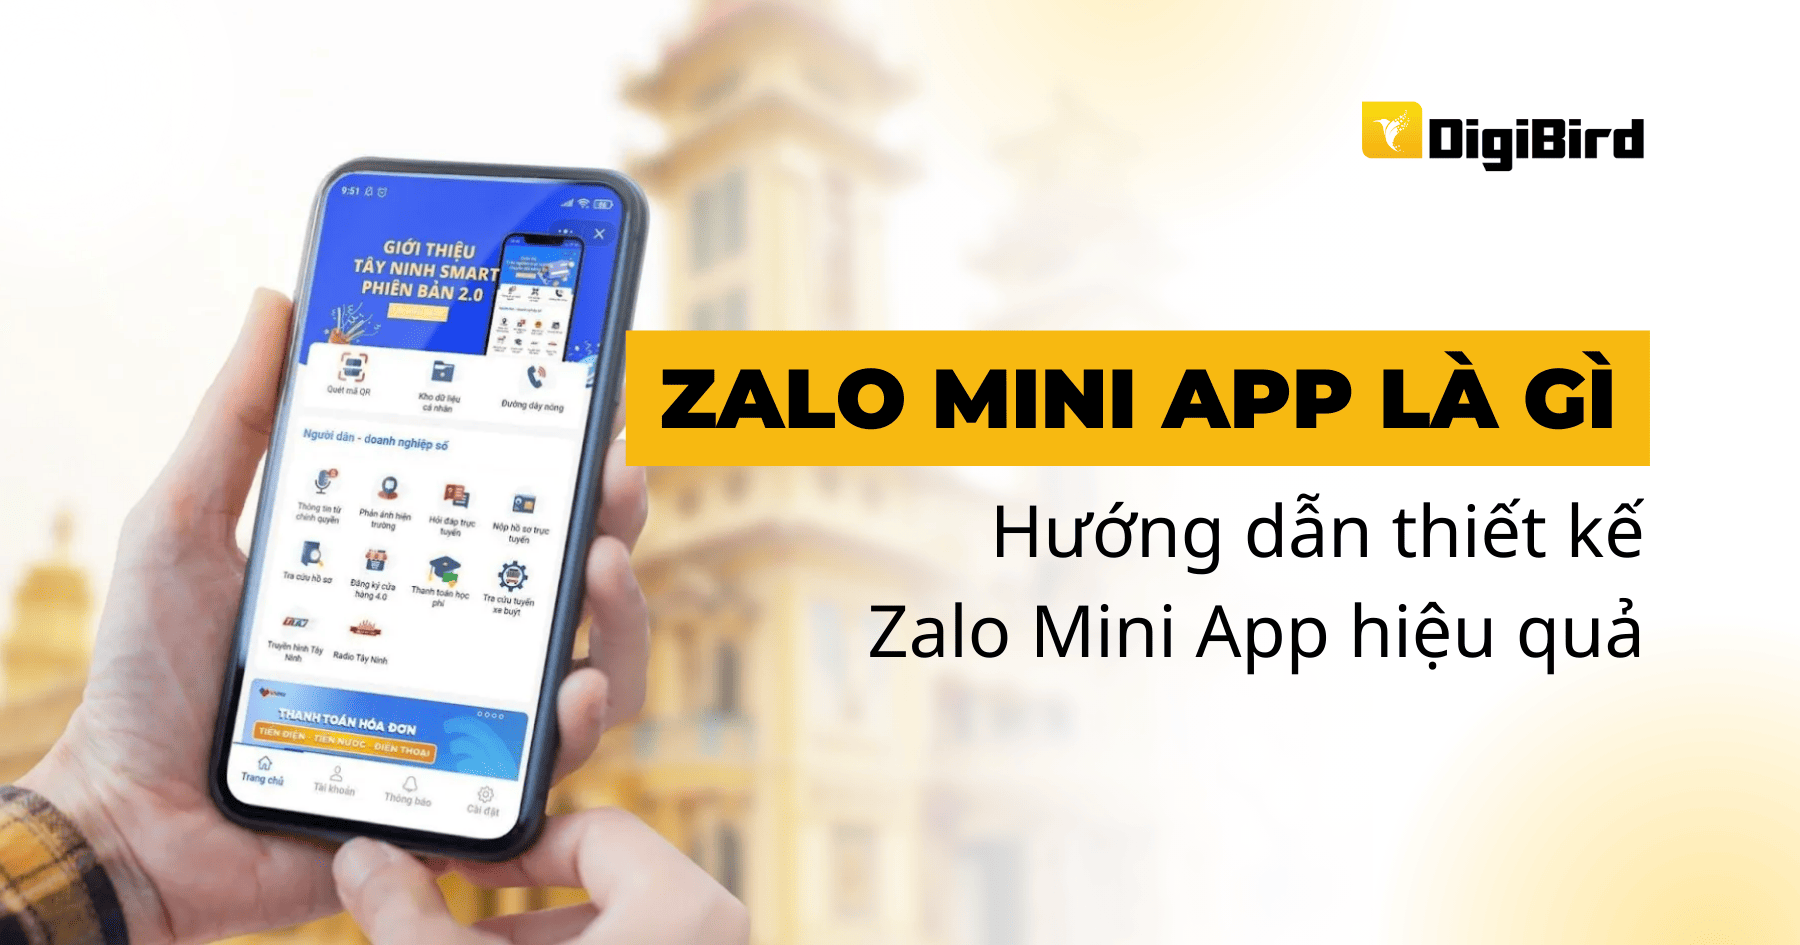 Zalo Mini App là gì? Hướng dẫn thiết kế Zalo Mini App hiệu quả cho doanh nghiệp